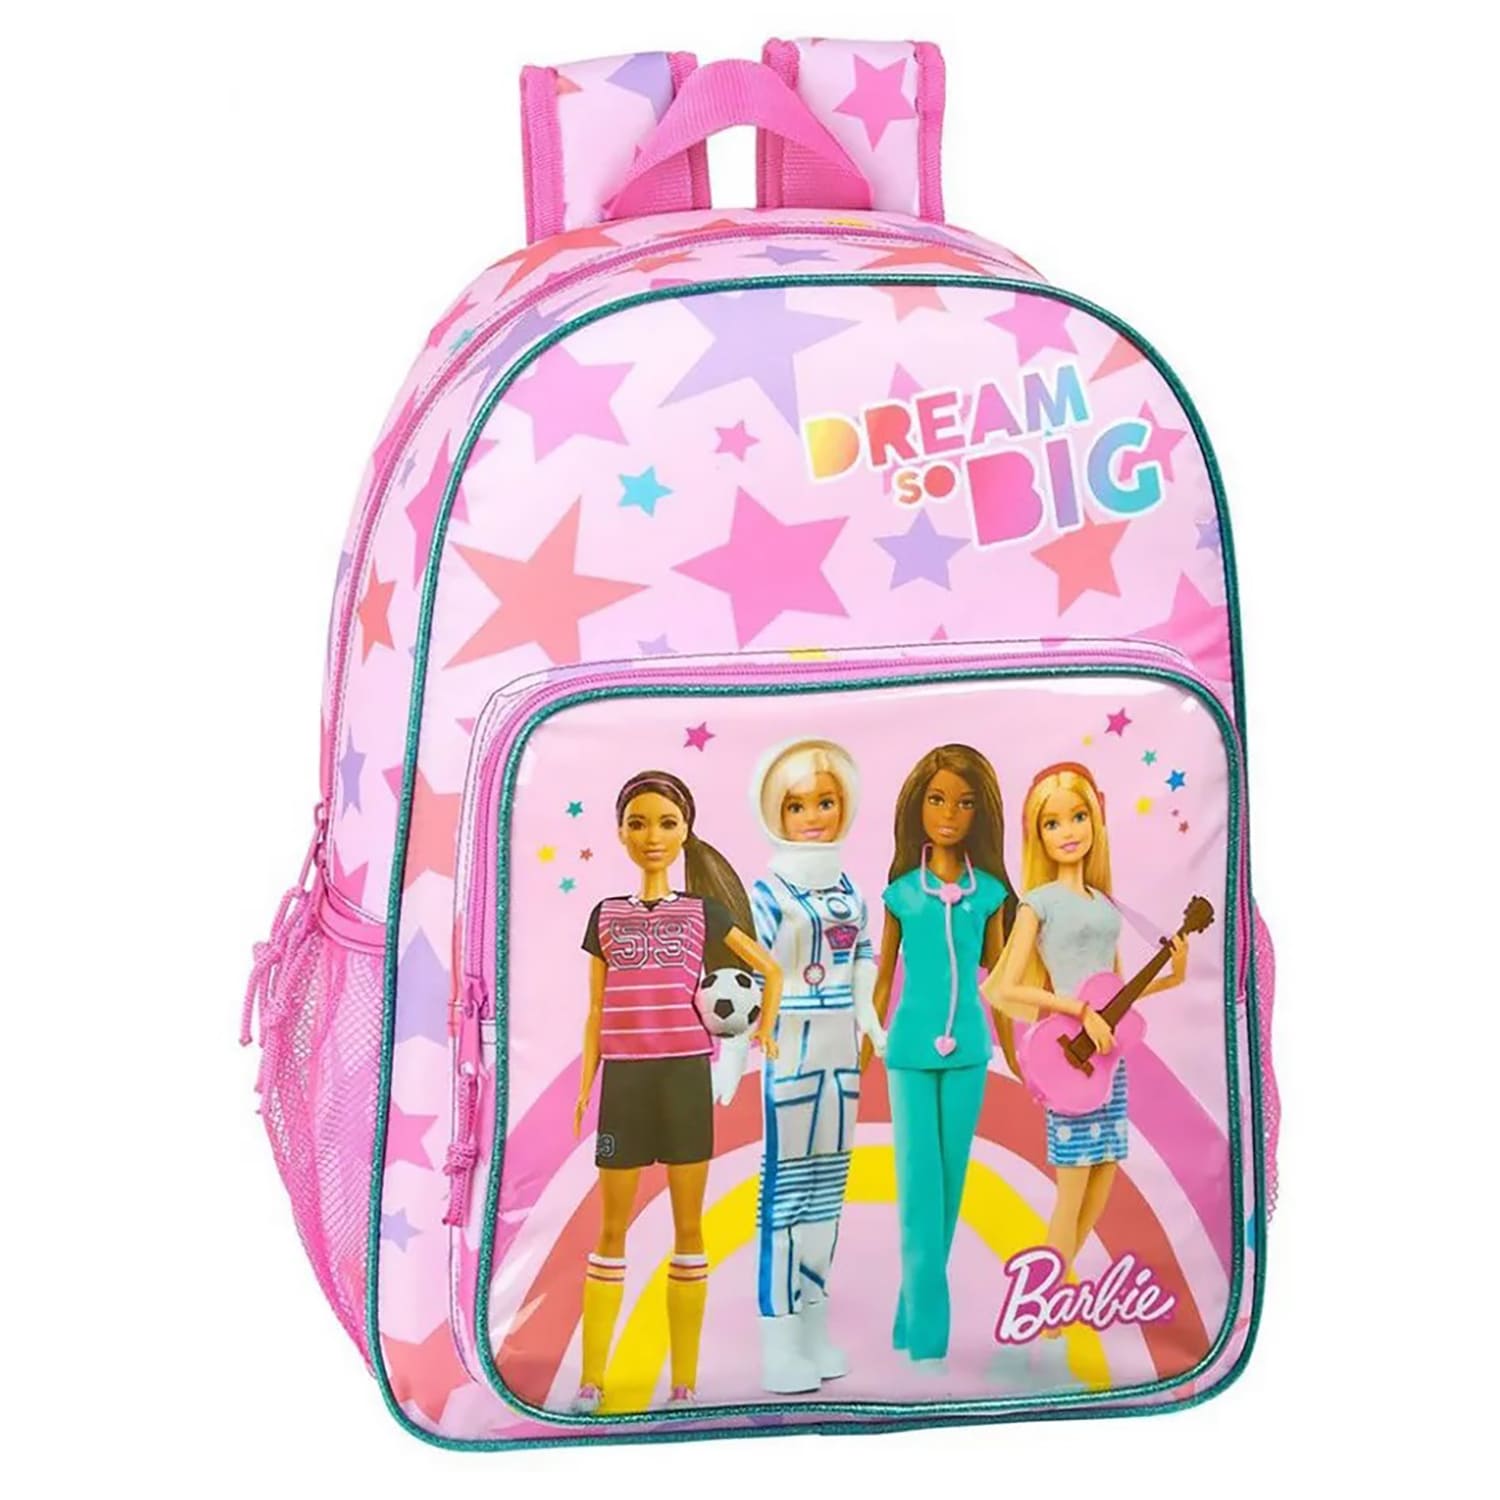 Zaino Barbie Dream so Big zainetto ufficiale con bretelle bambina scuola 4315